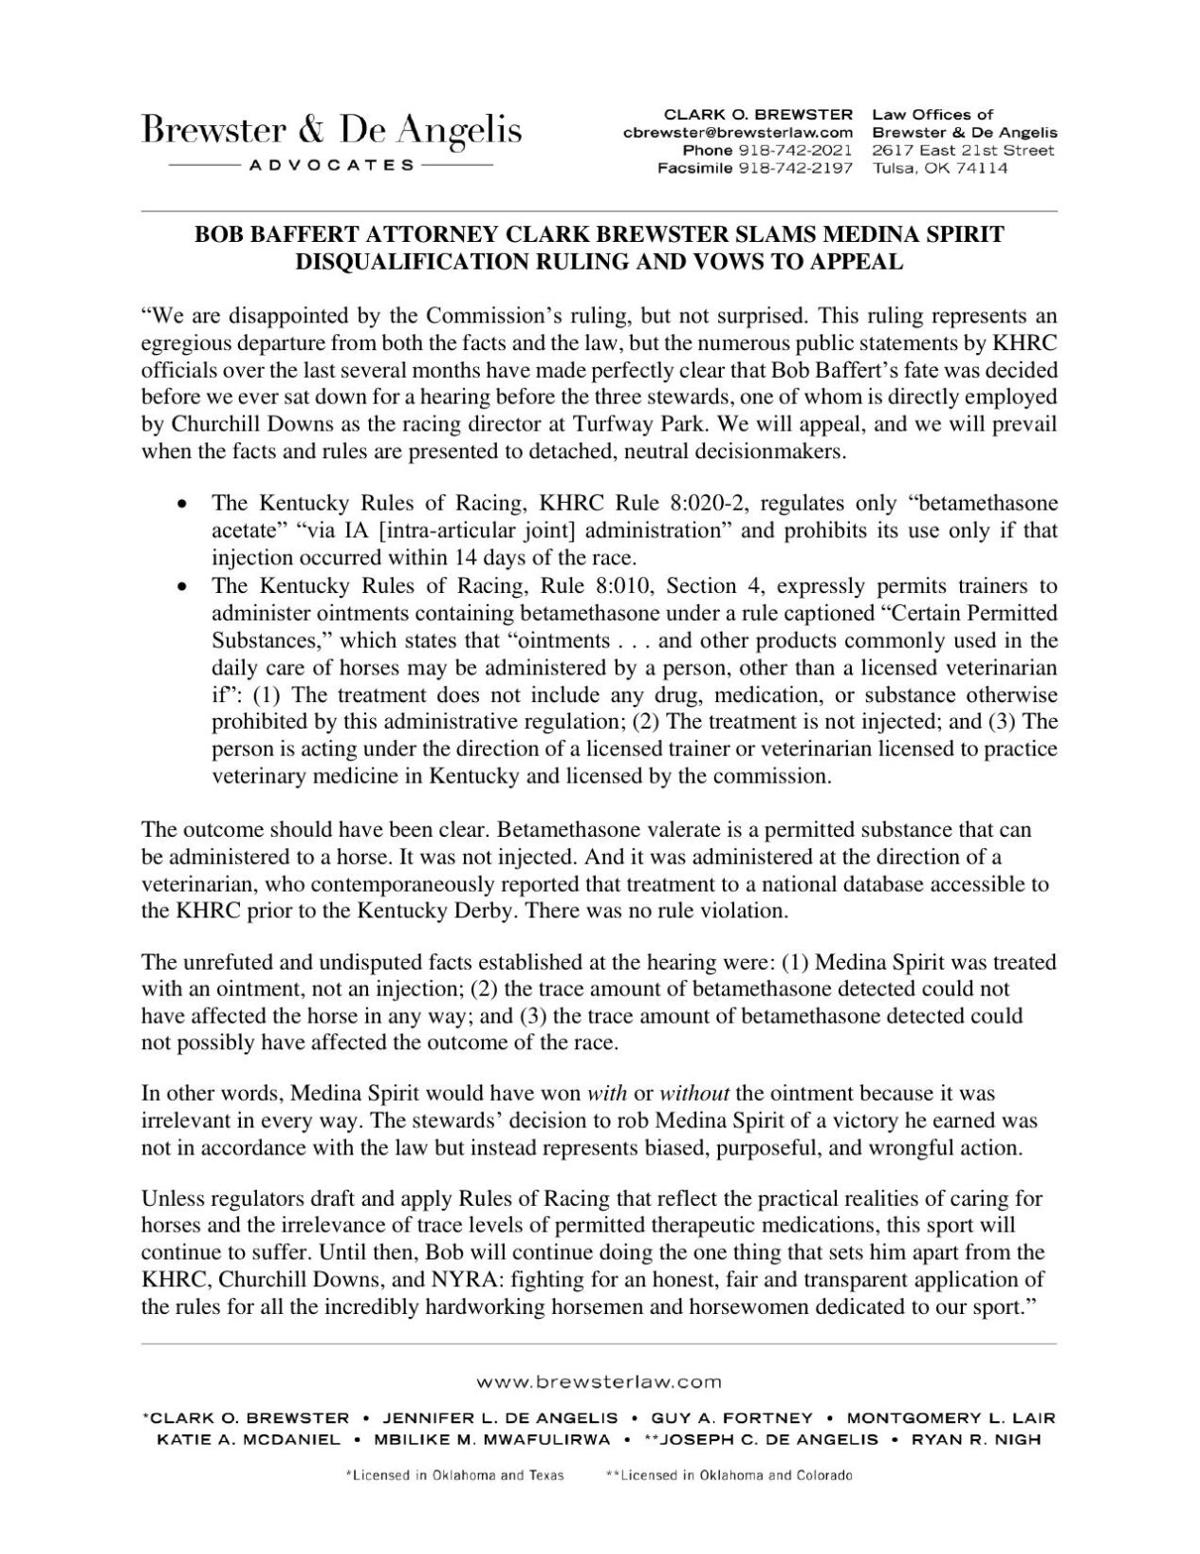 Clark Brewster statement on Medina Spirit disqualification